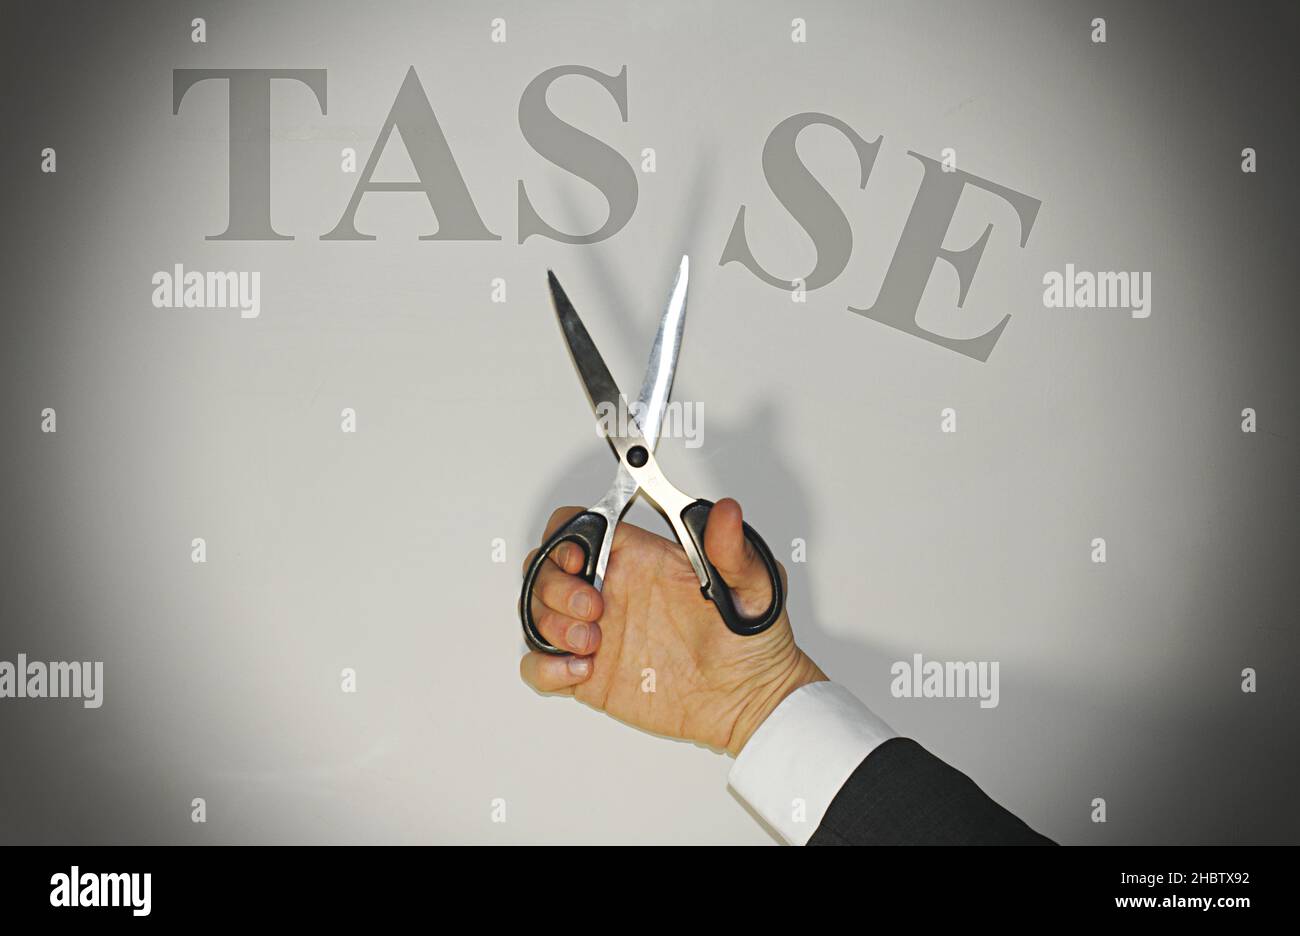 Handscheren, die das Wort 'Tasse' in italienisch übersetzt, schneidet Steuern, Konzept der Steuersenkung in Italien. Stockfoto